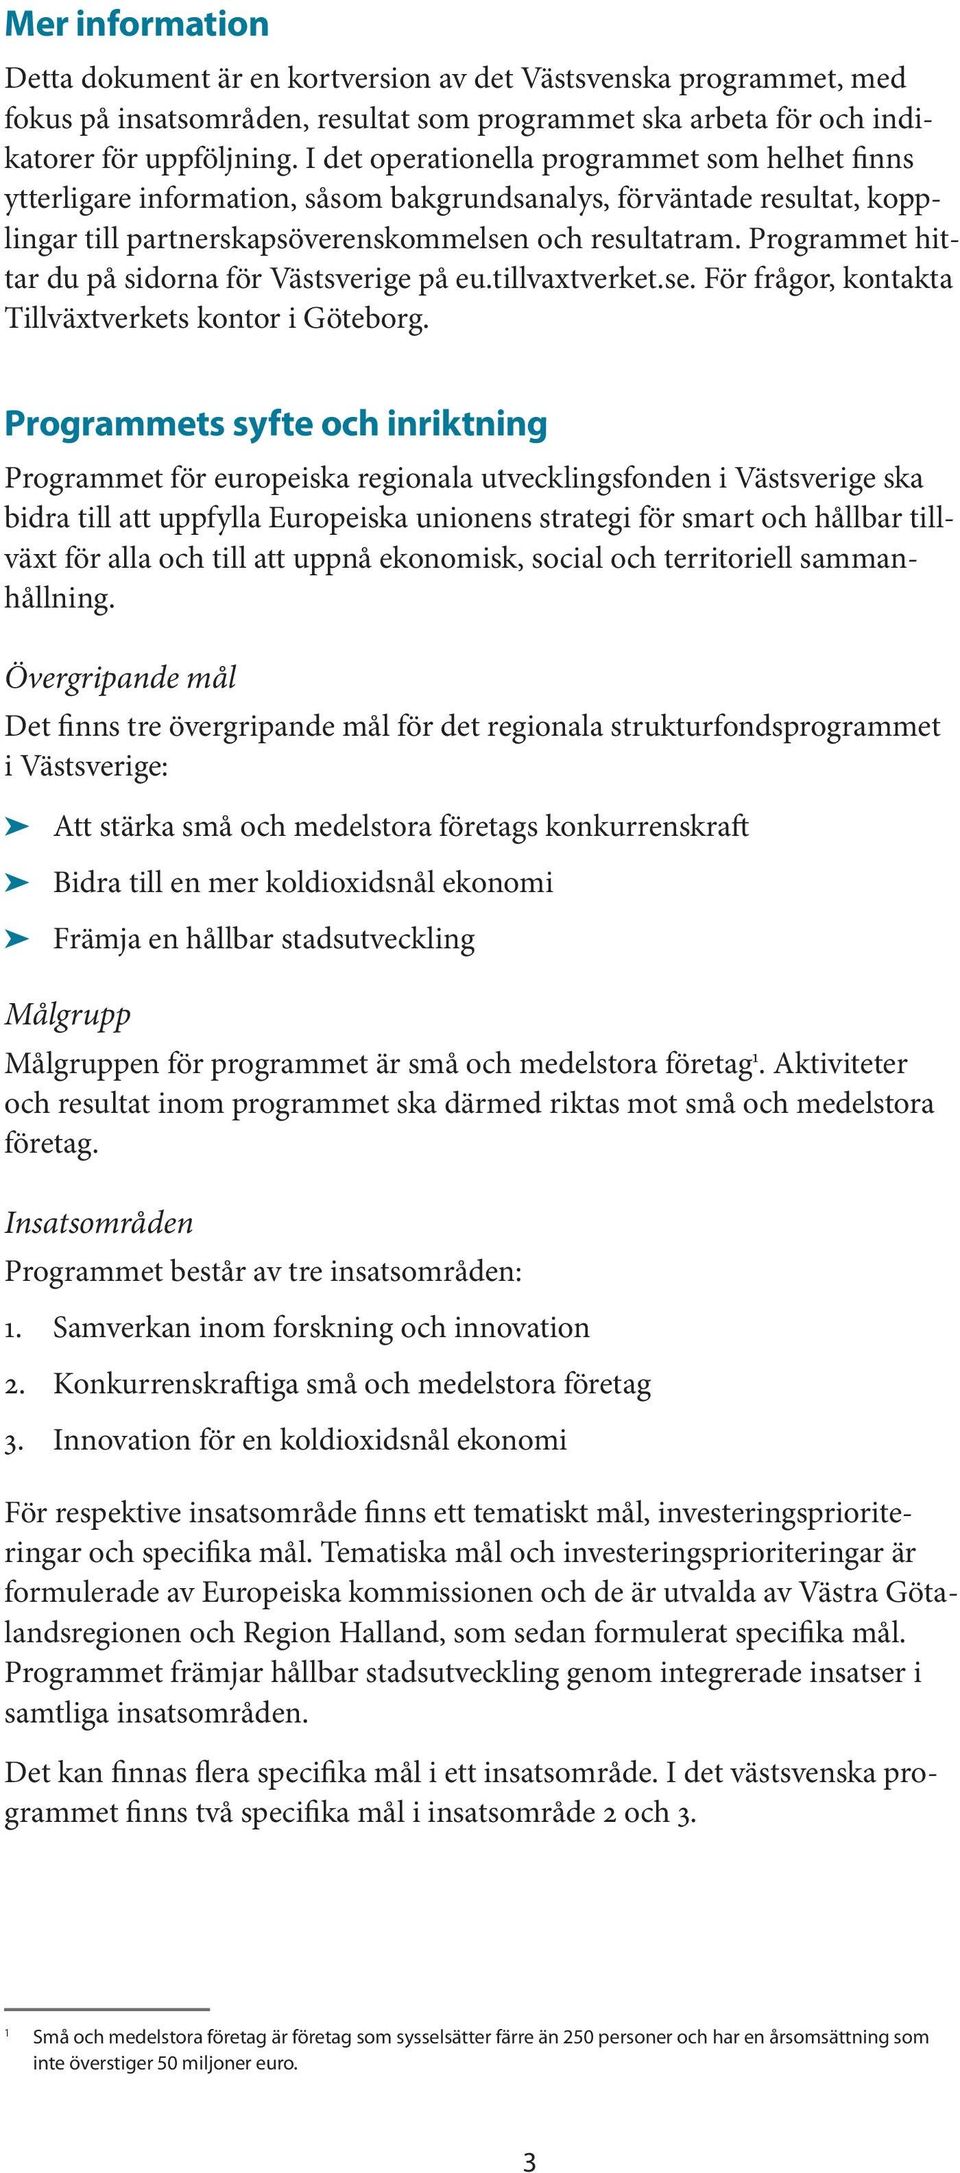 Programmet hittar du på sidorna för Västsverige på eu.tillvaxtverket.se. För frågor, kontakta Tillväxtverkets kontor i Göteborg.